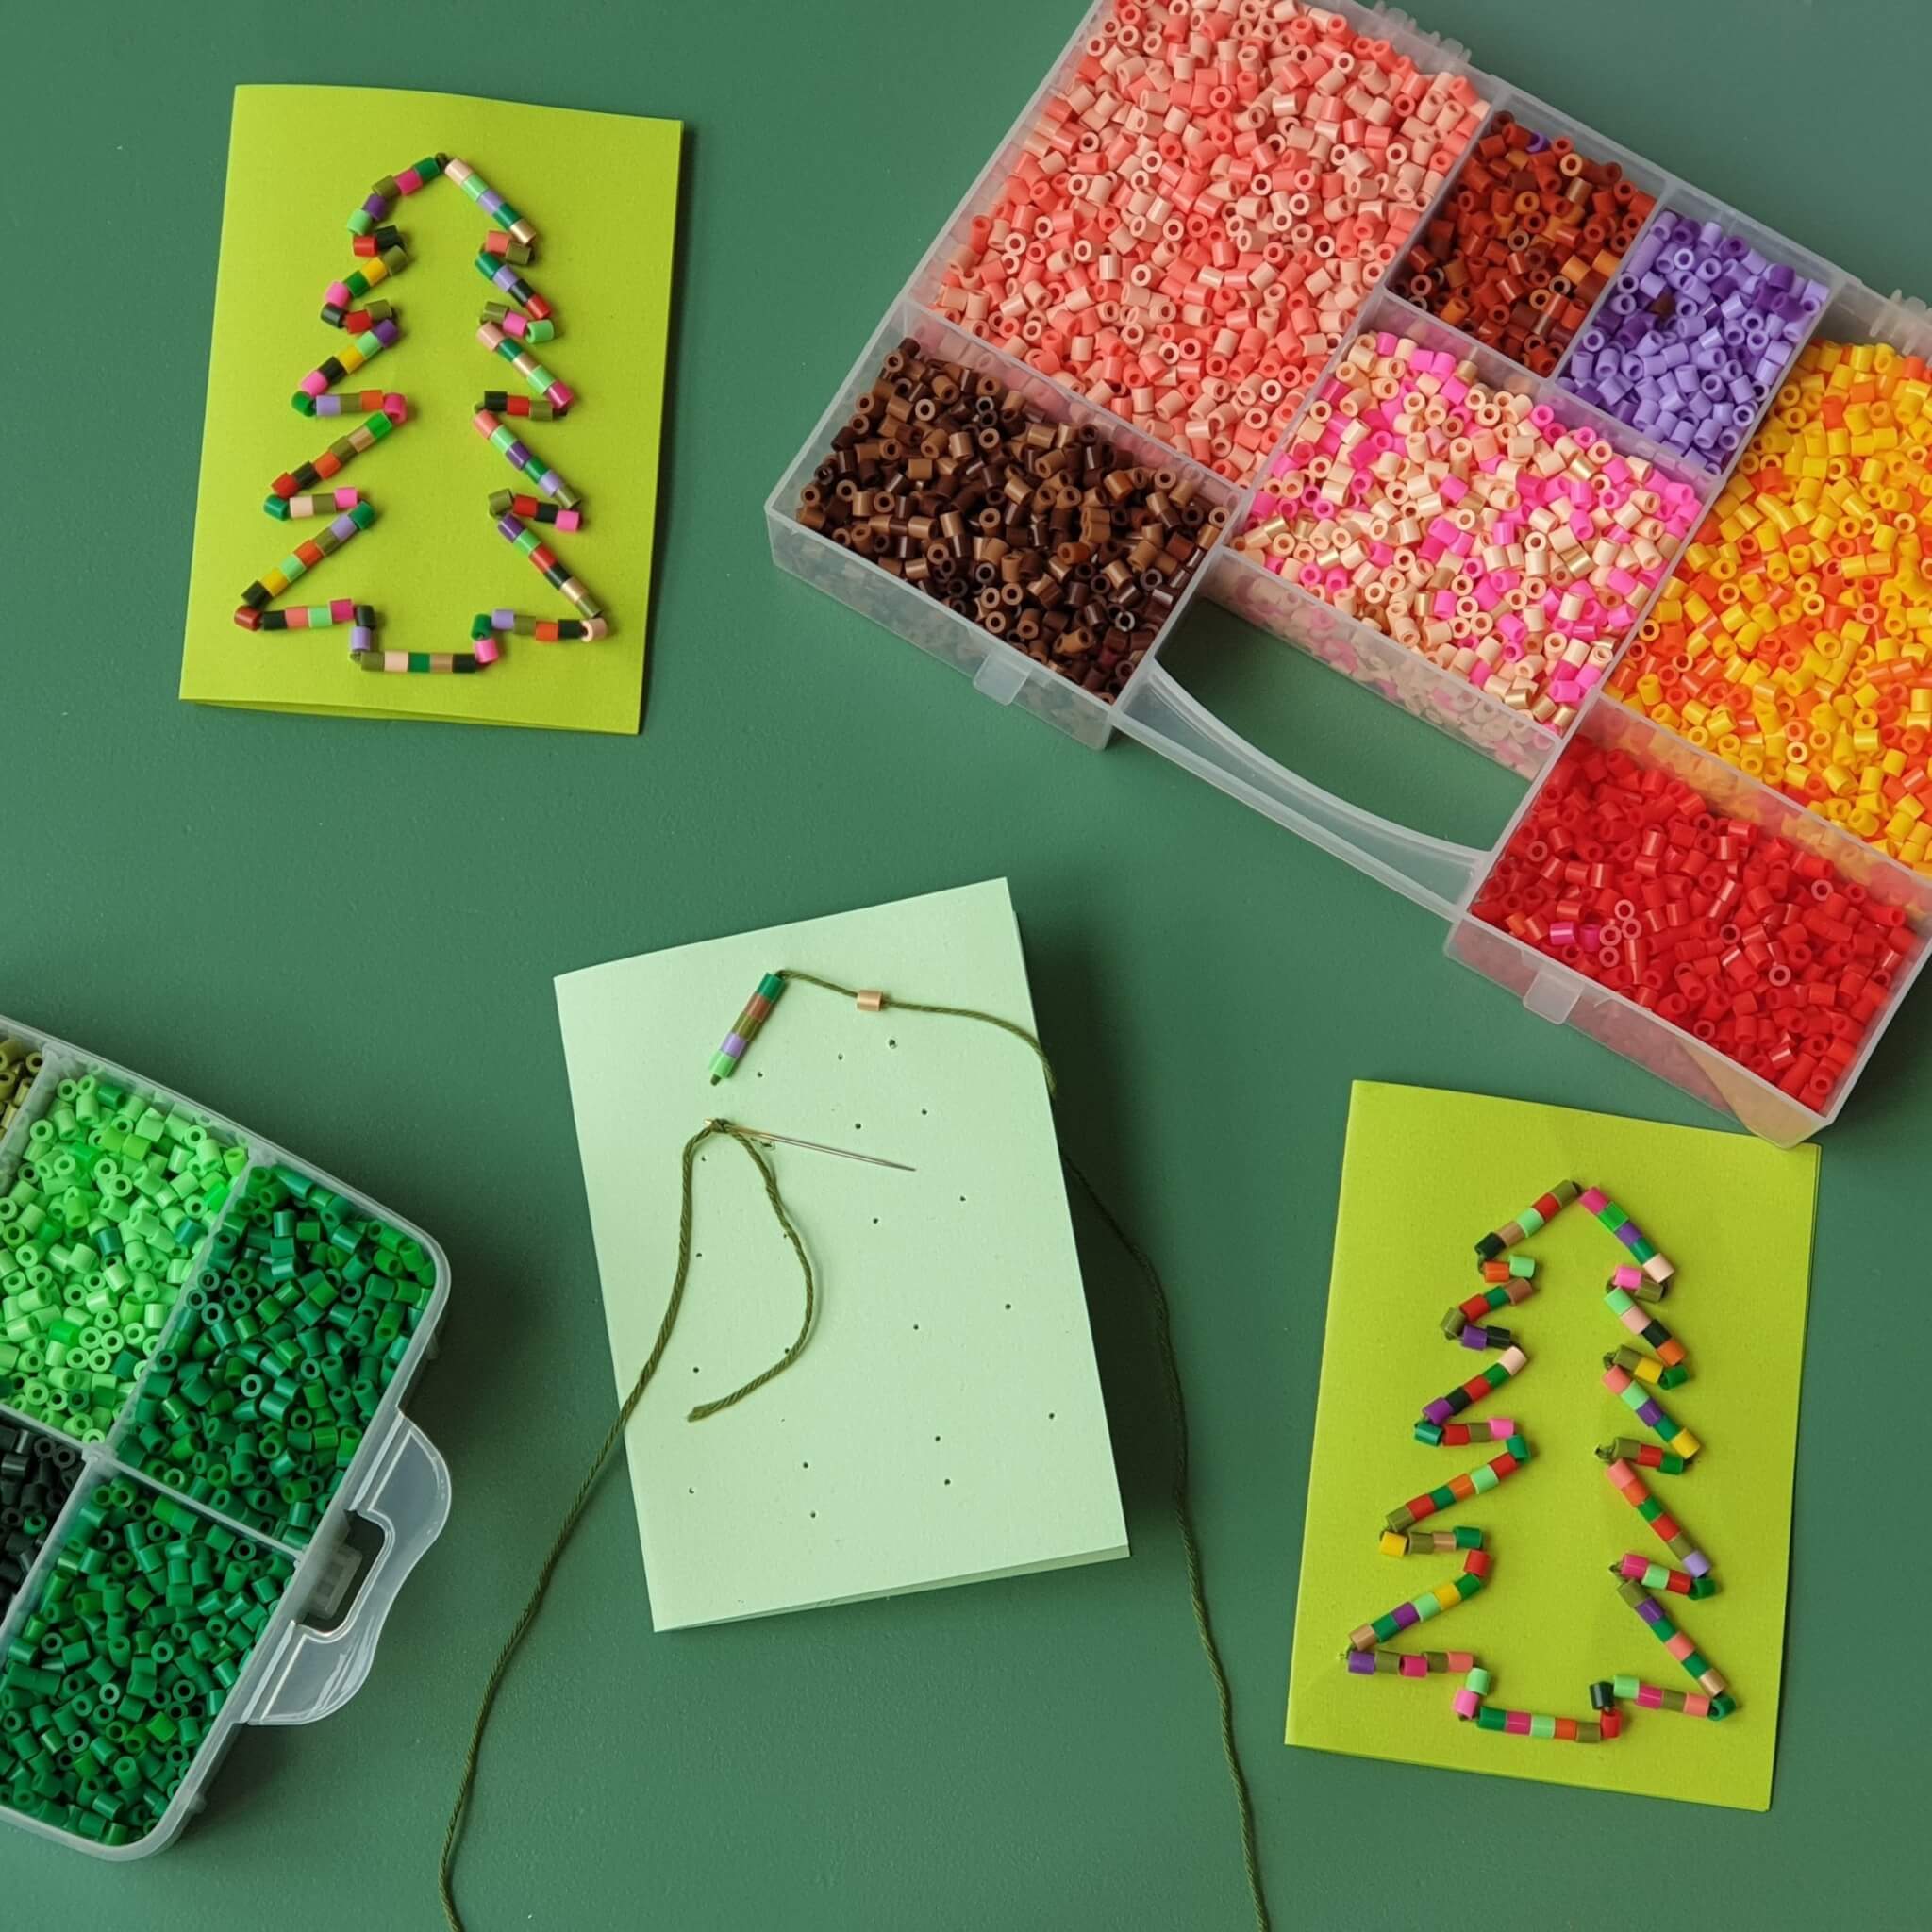 Kerst knutselen met strijkkralen: leuke ideeën. Deze kerstkaarten maak je met strijkkralen.